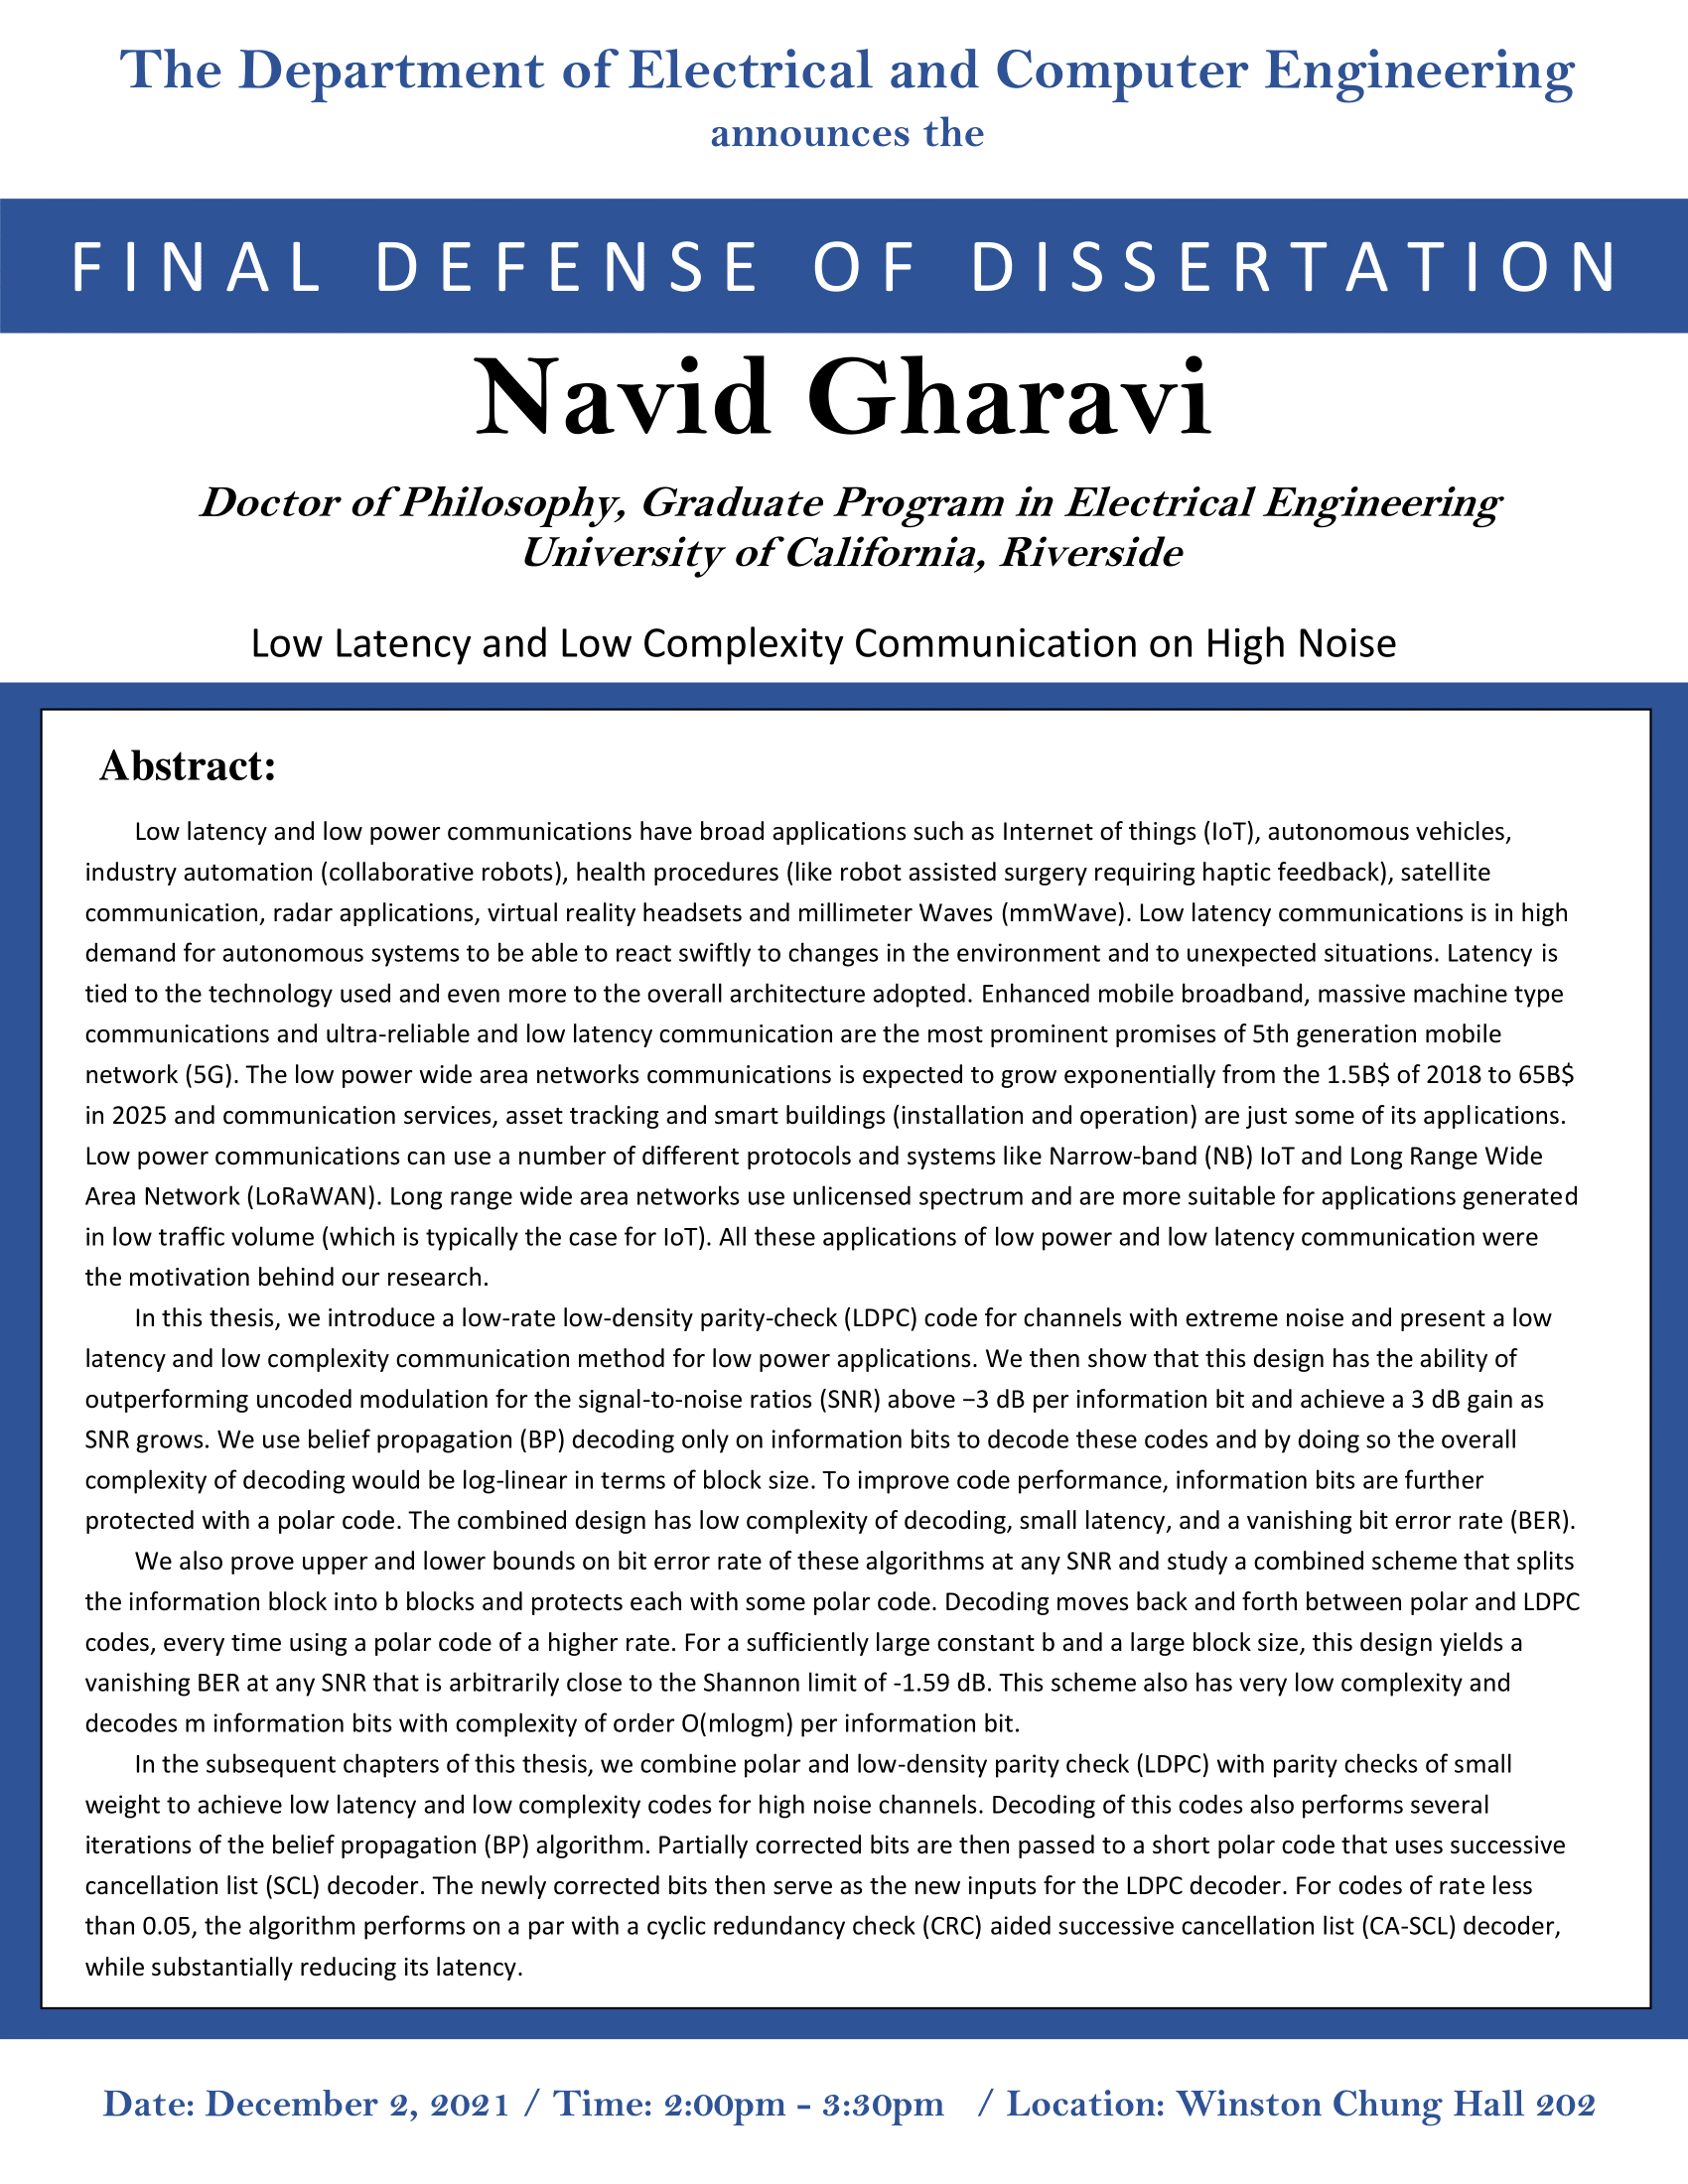 Navid Gharavi